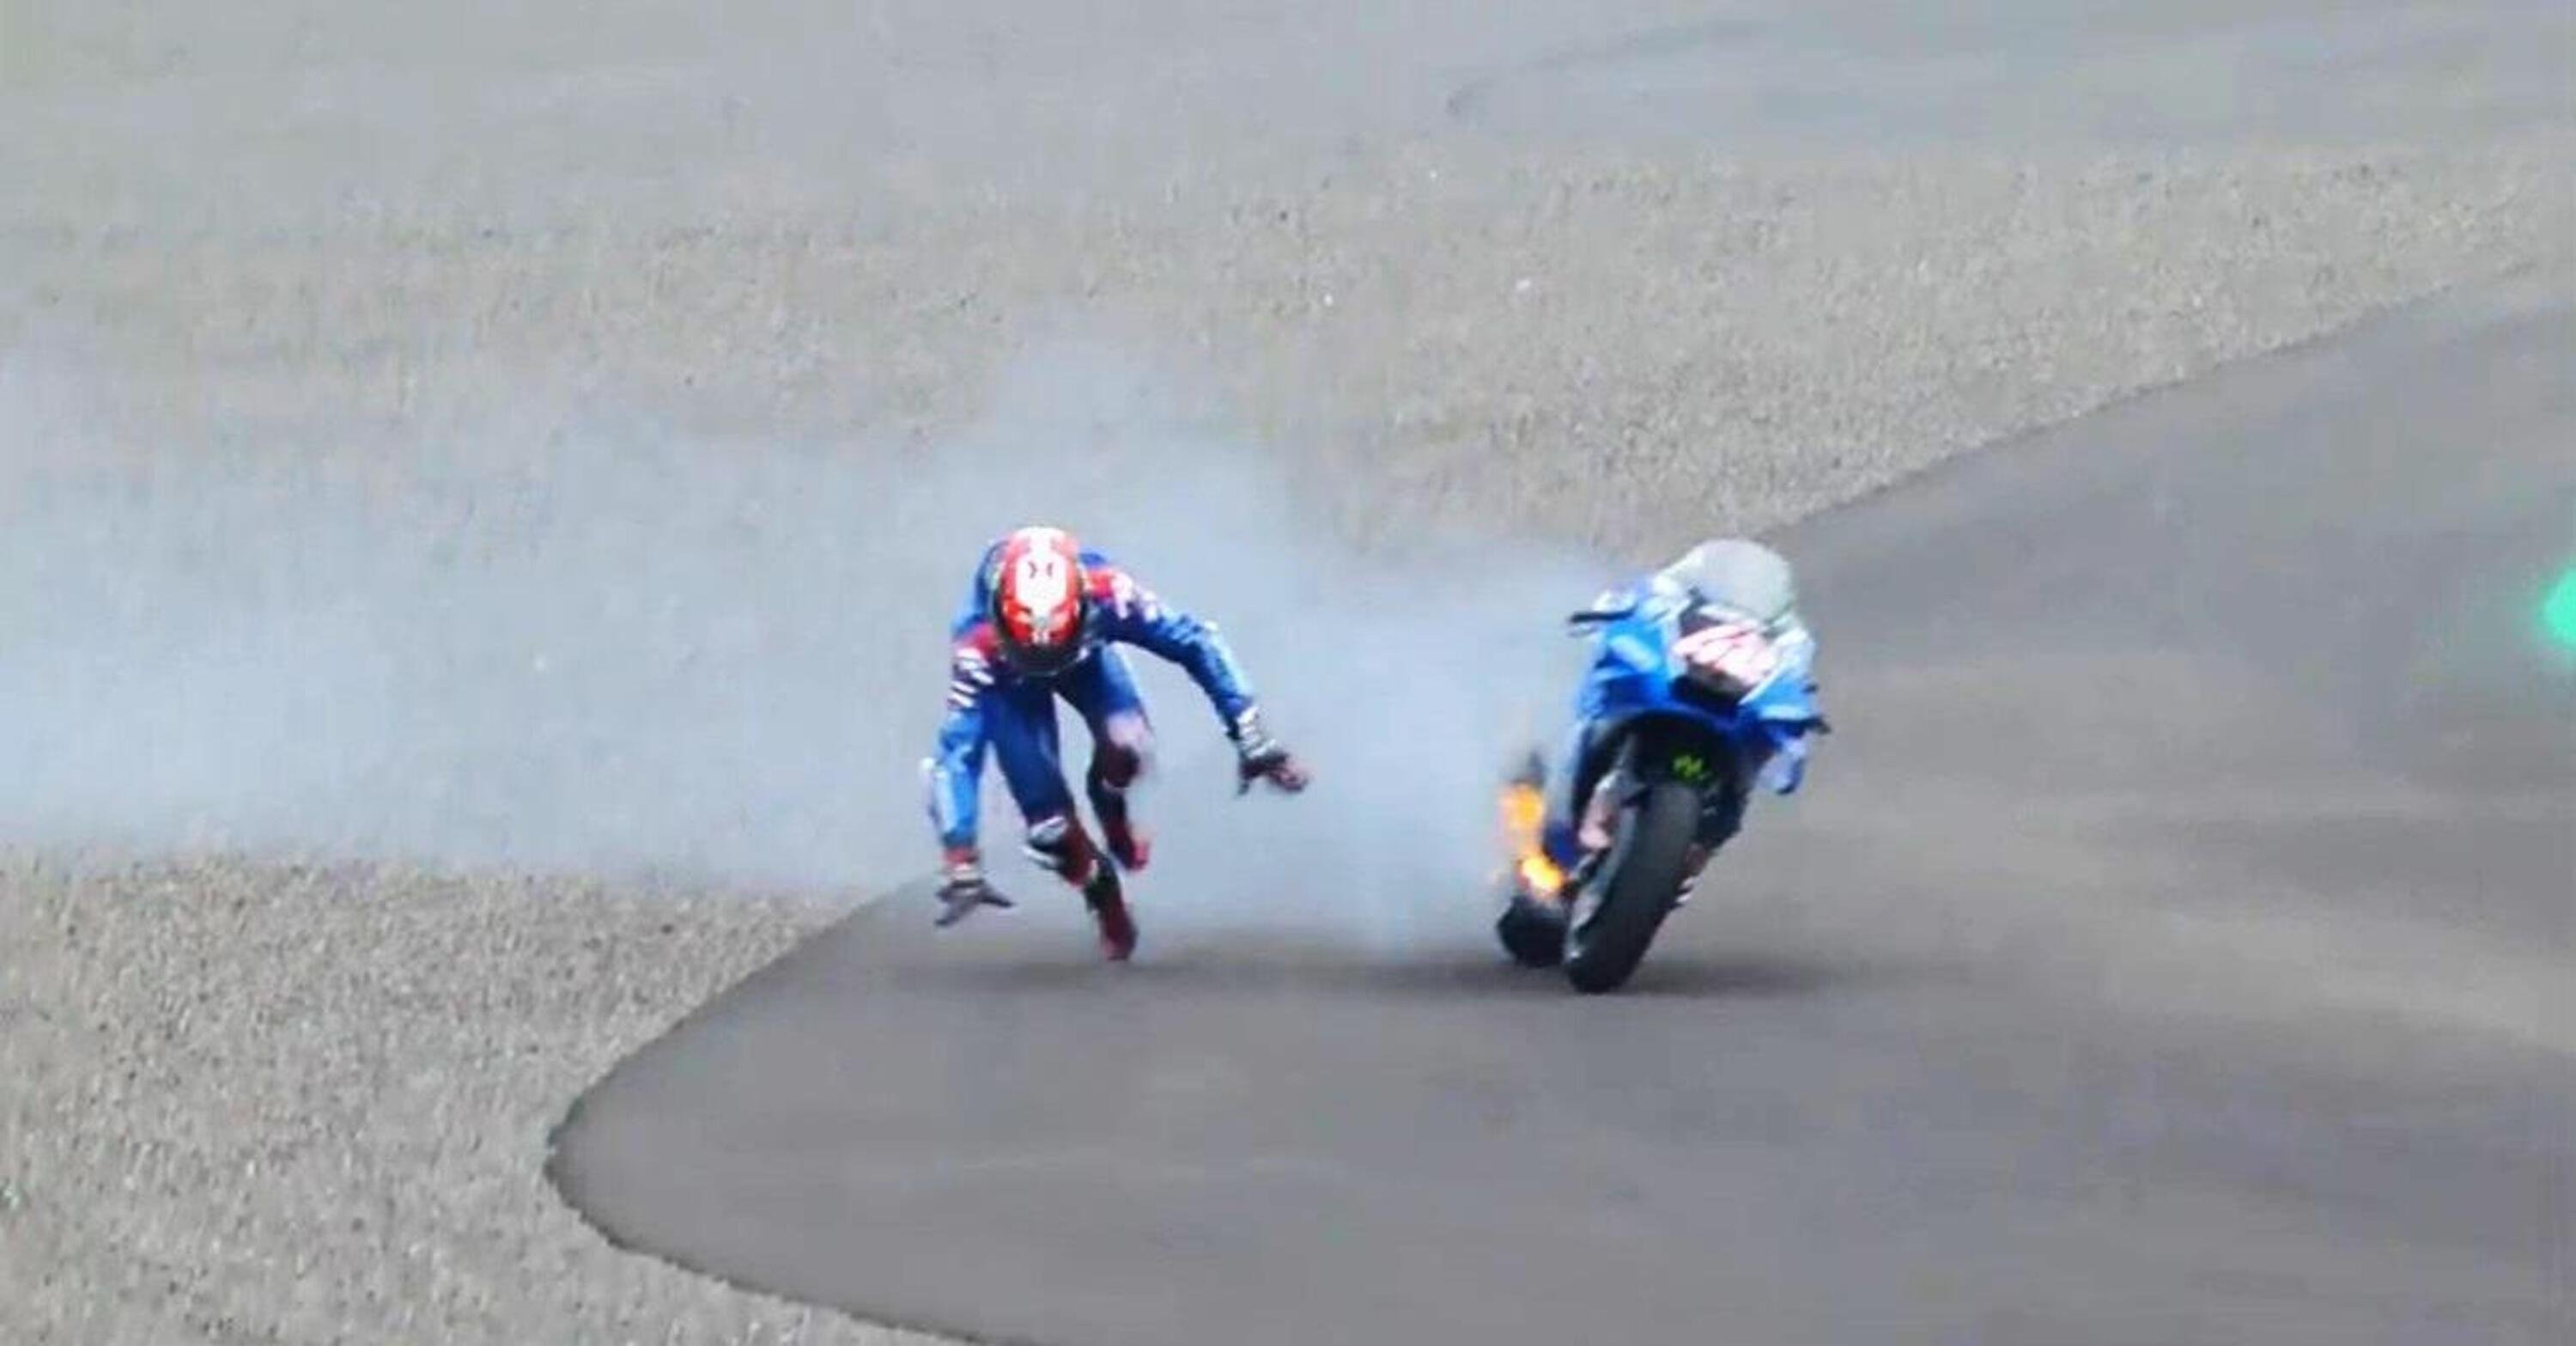 MotoGP 2022, GP di Indonesia a Mandalika. In fiamme la Suzuki di Alex Rins, il pilota scende al volo: &quot;Ho avuto paura!&quot; [VIDEO]